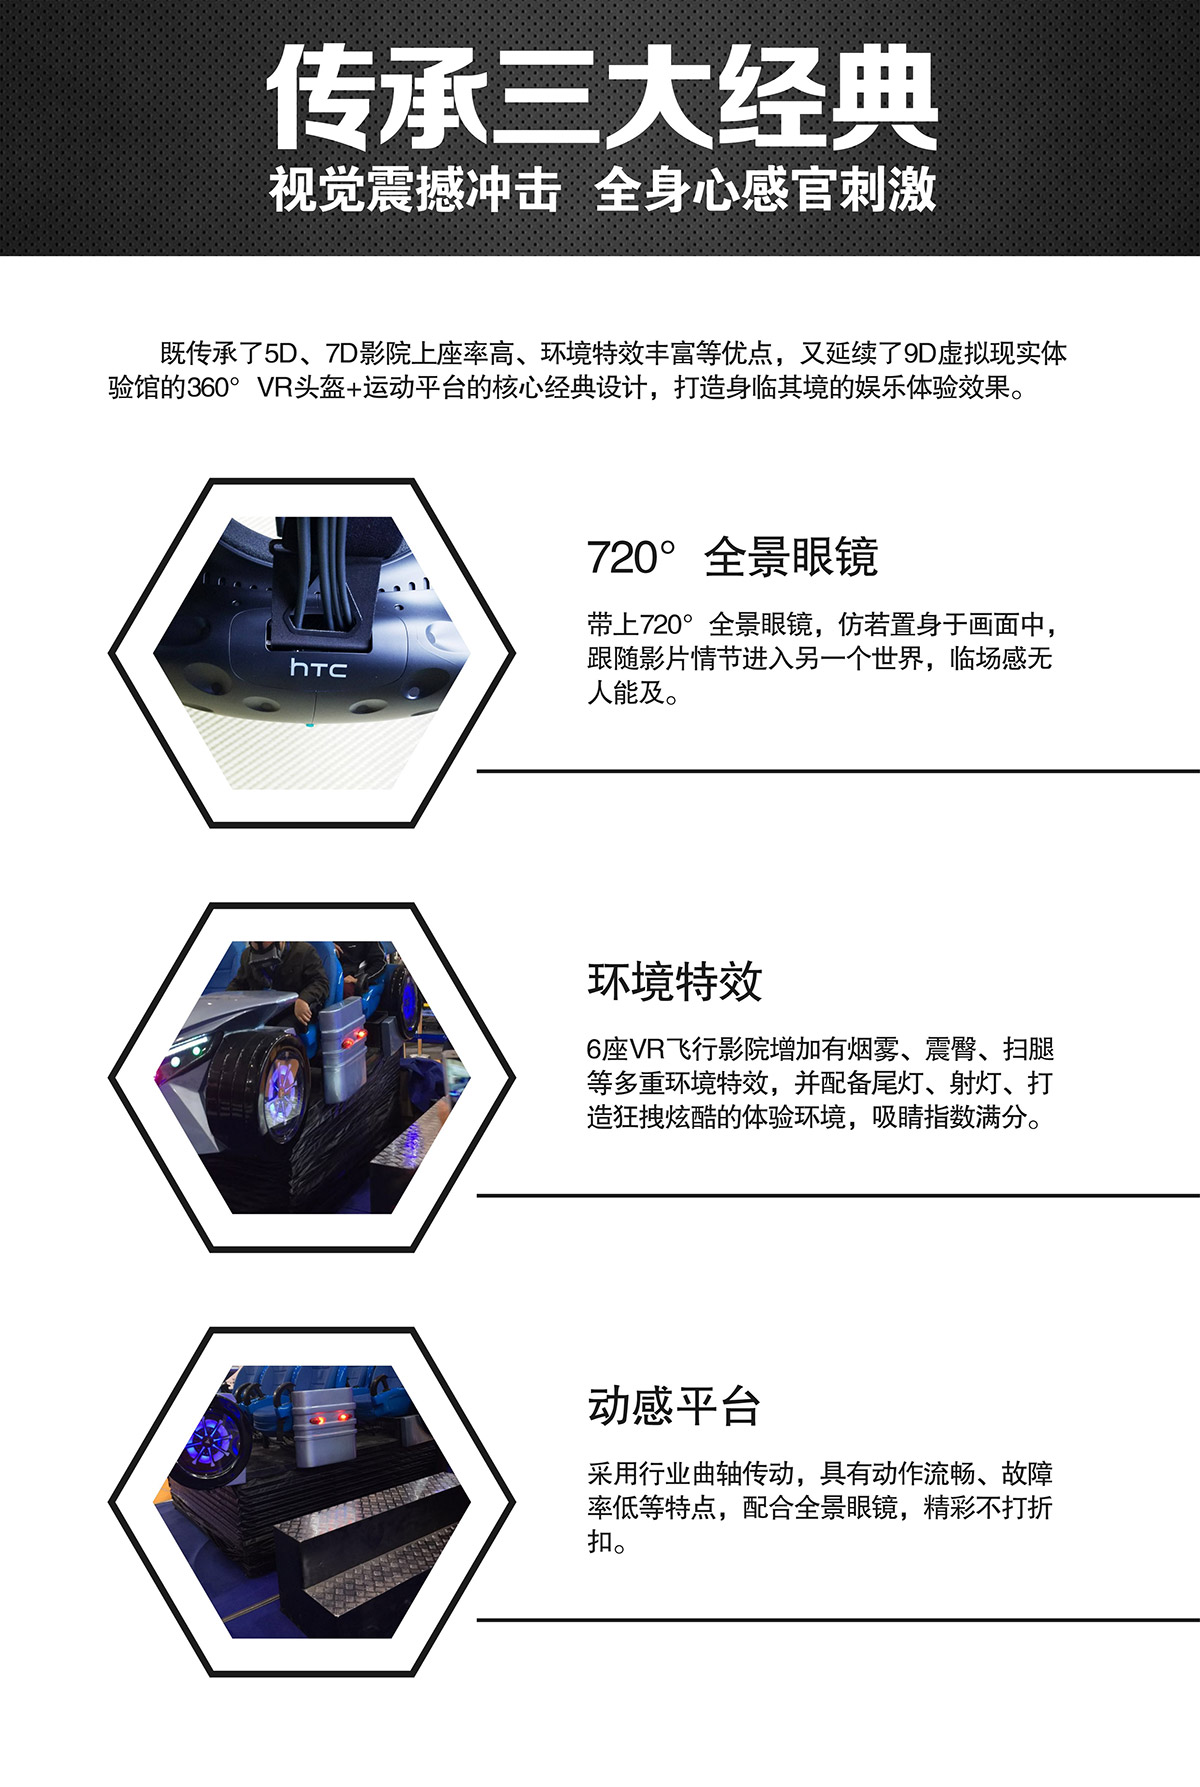 互动电影VR虚拟飞行体验馆视觉震撼冲击.jpg